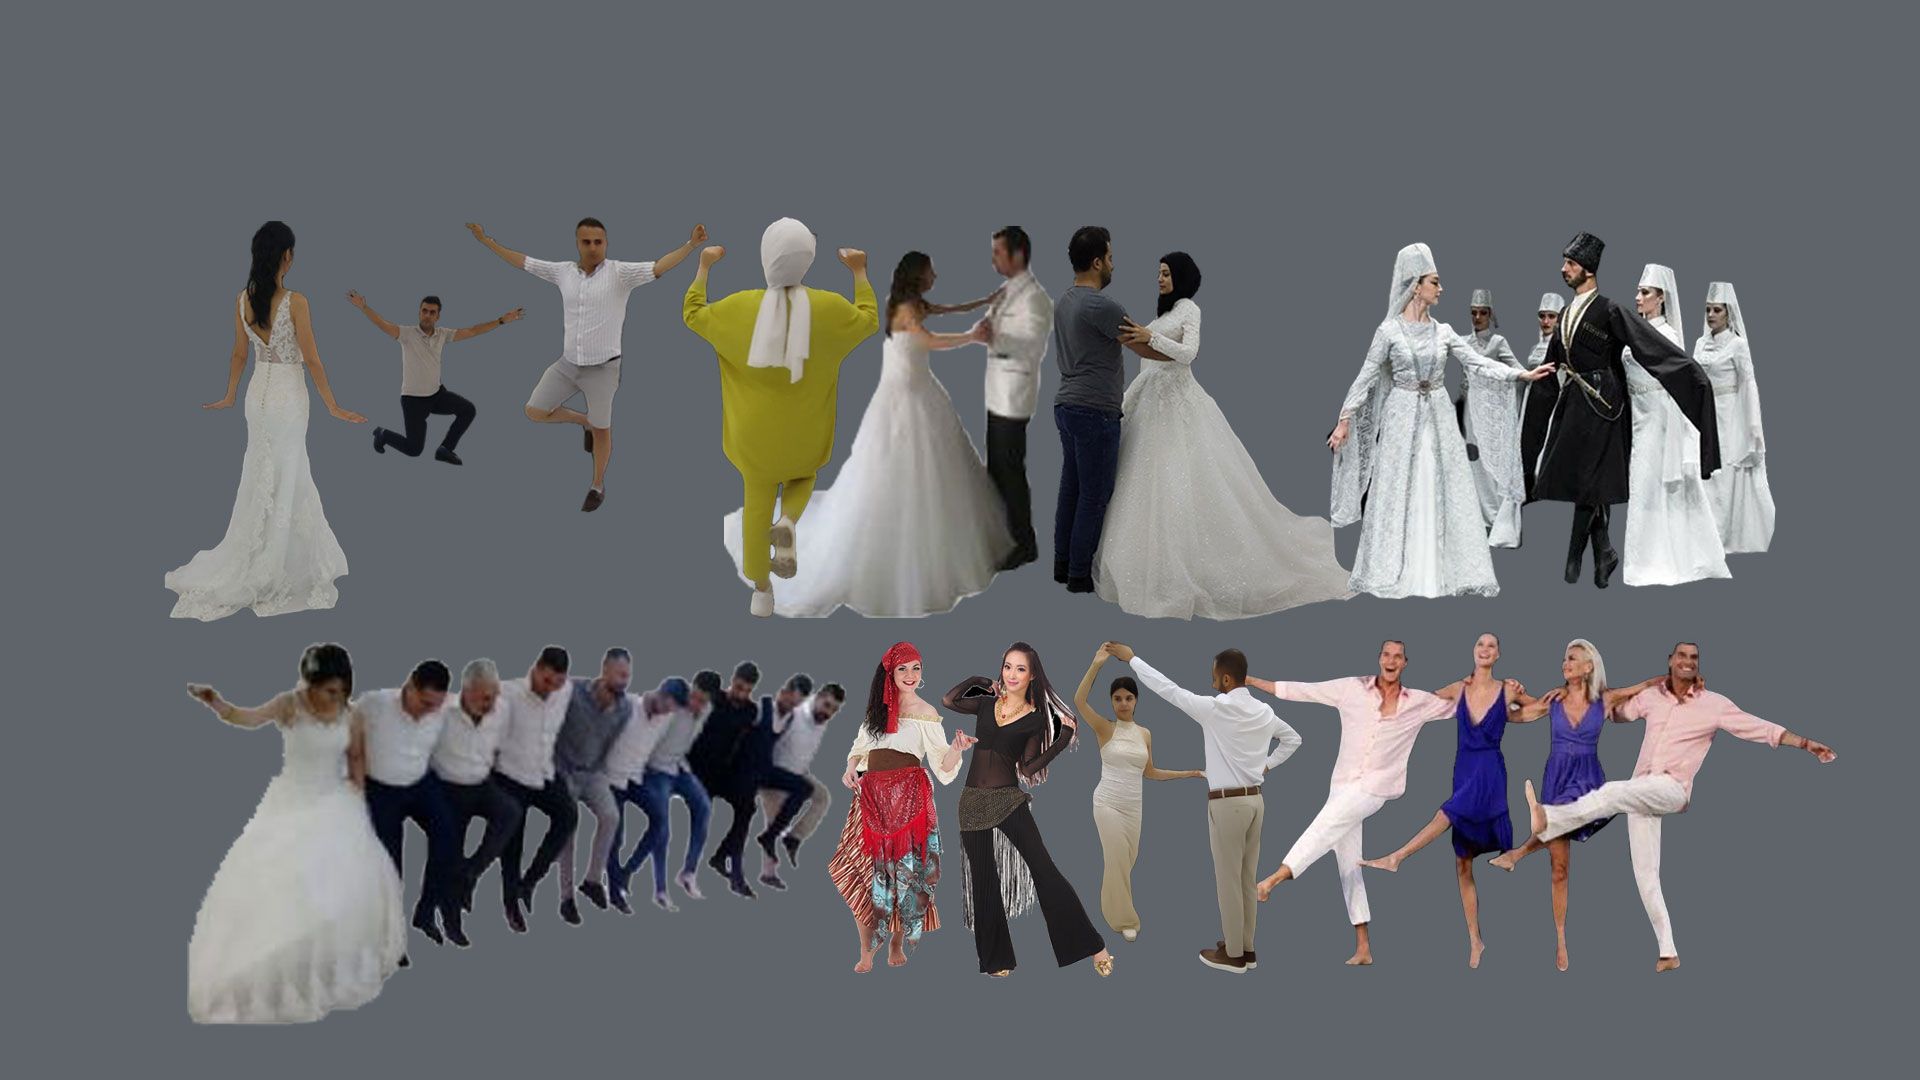 Ankara Düğün Dansları Merkezi